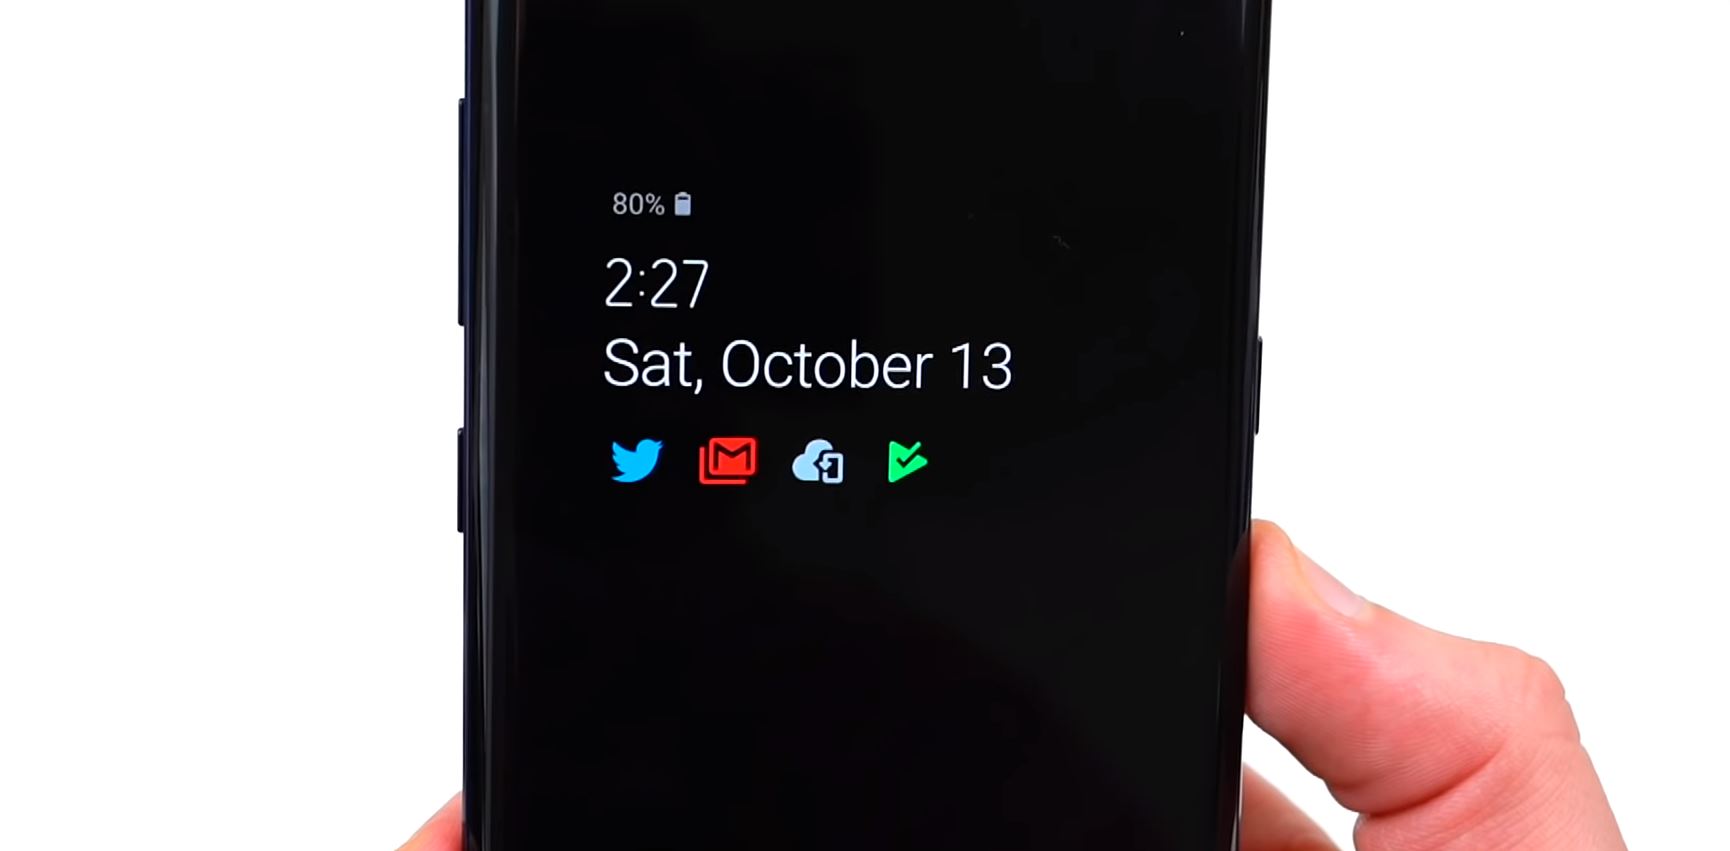 One UI от Samsung. Обзор новой оболочки для смартфонов - always on display